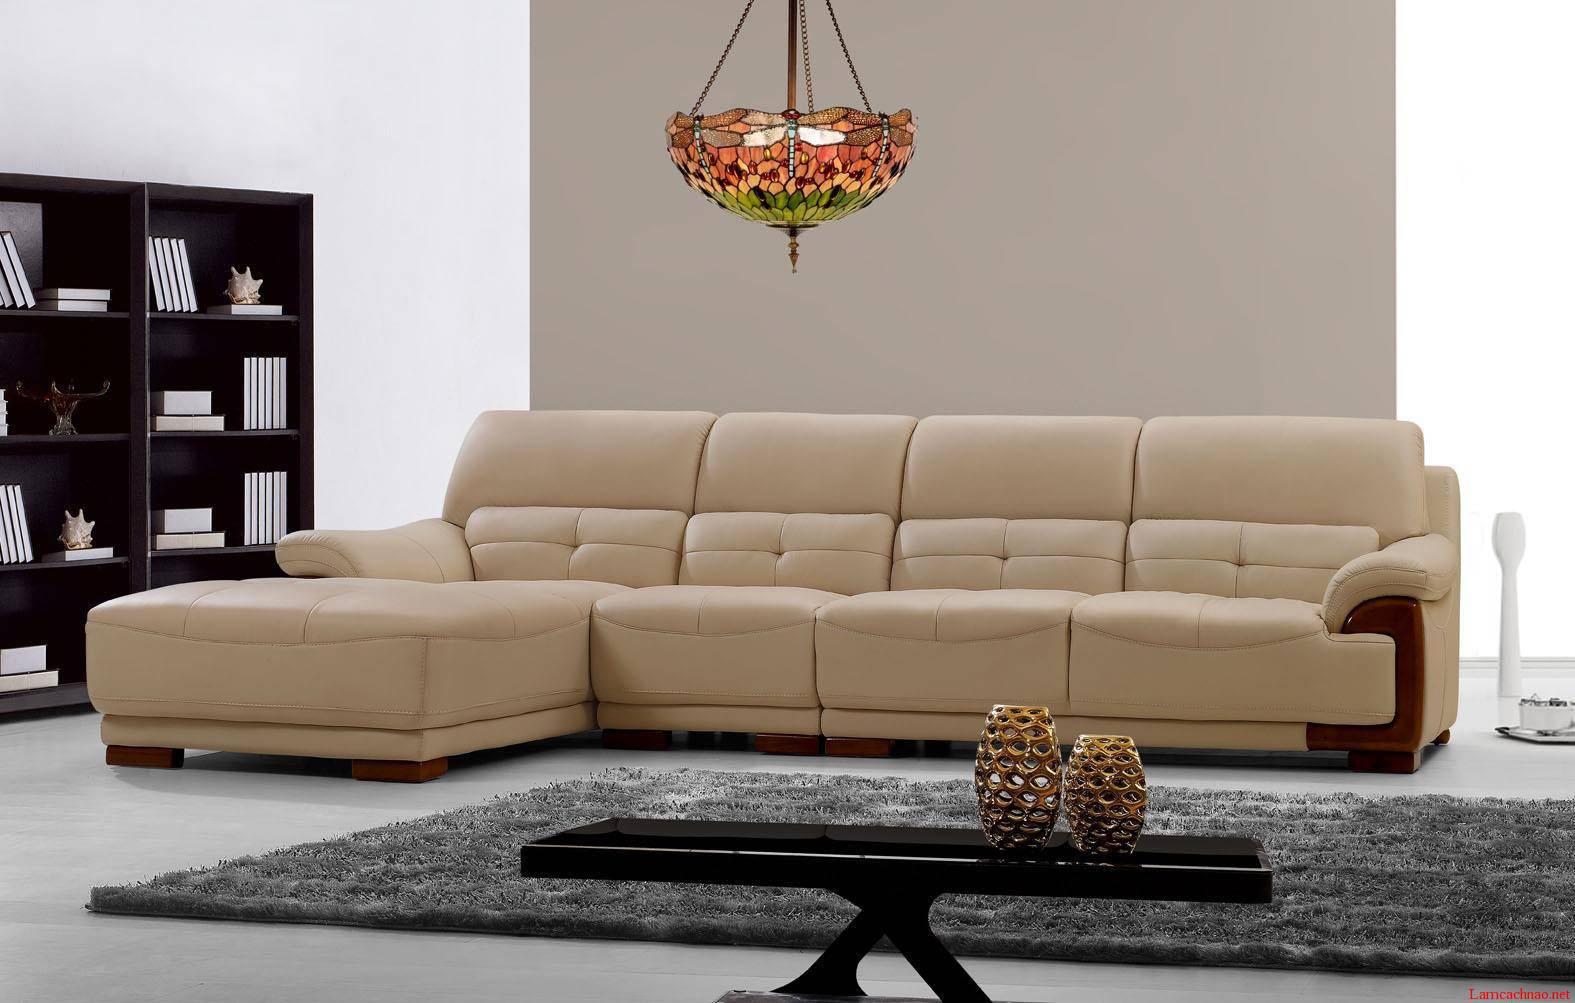 Đa dạng dáng vẻ bộ sofa với dịch vụ bọc ghế chất lượng cao - Nội thất Vinaco